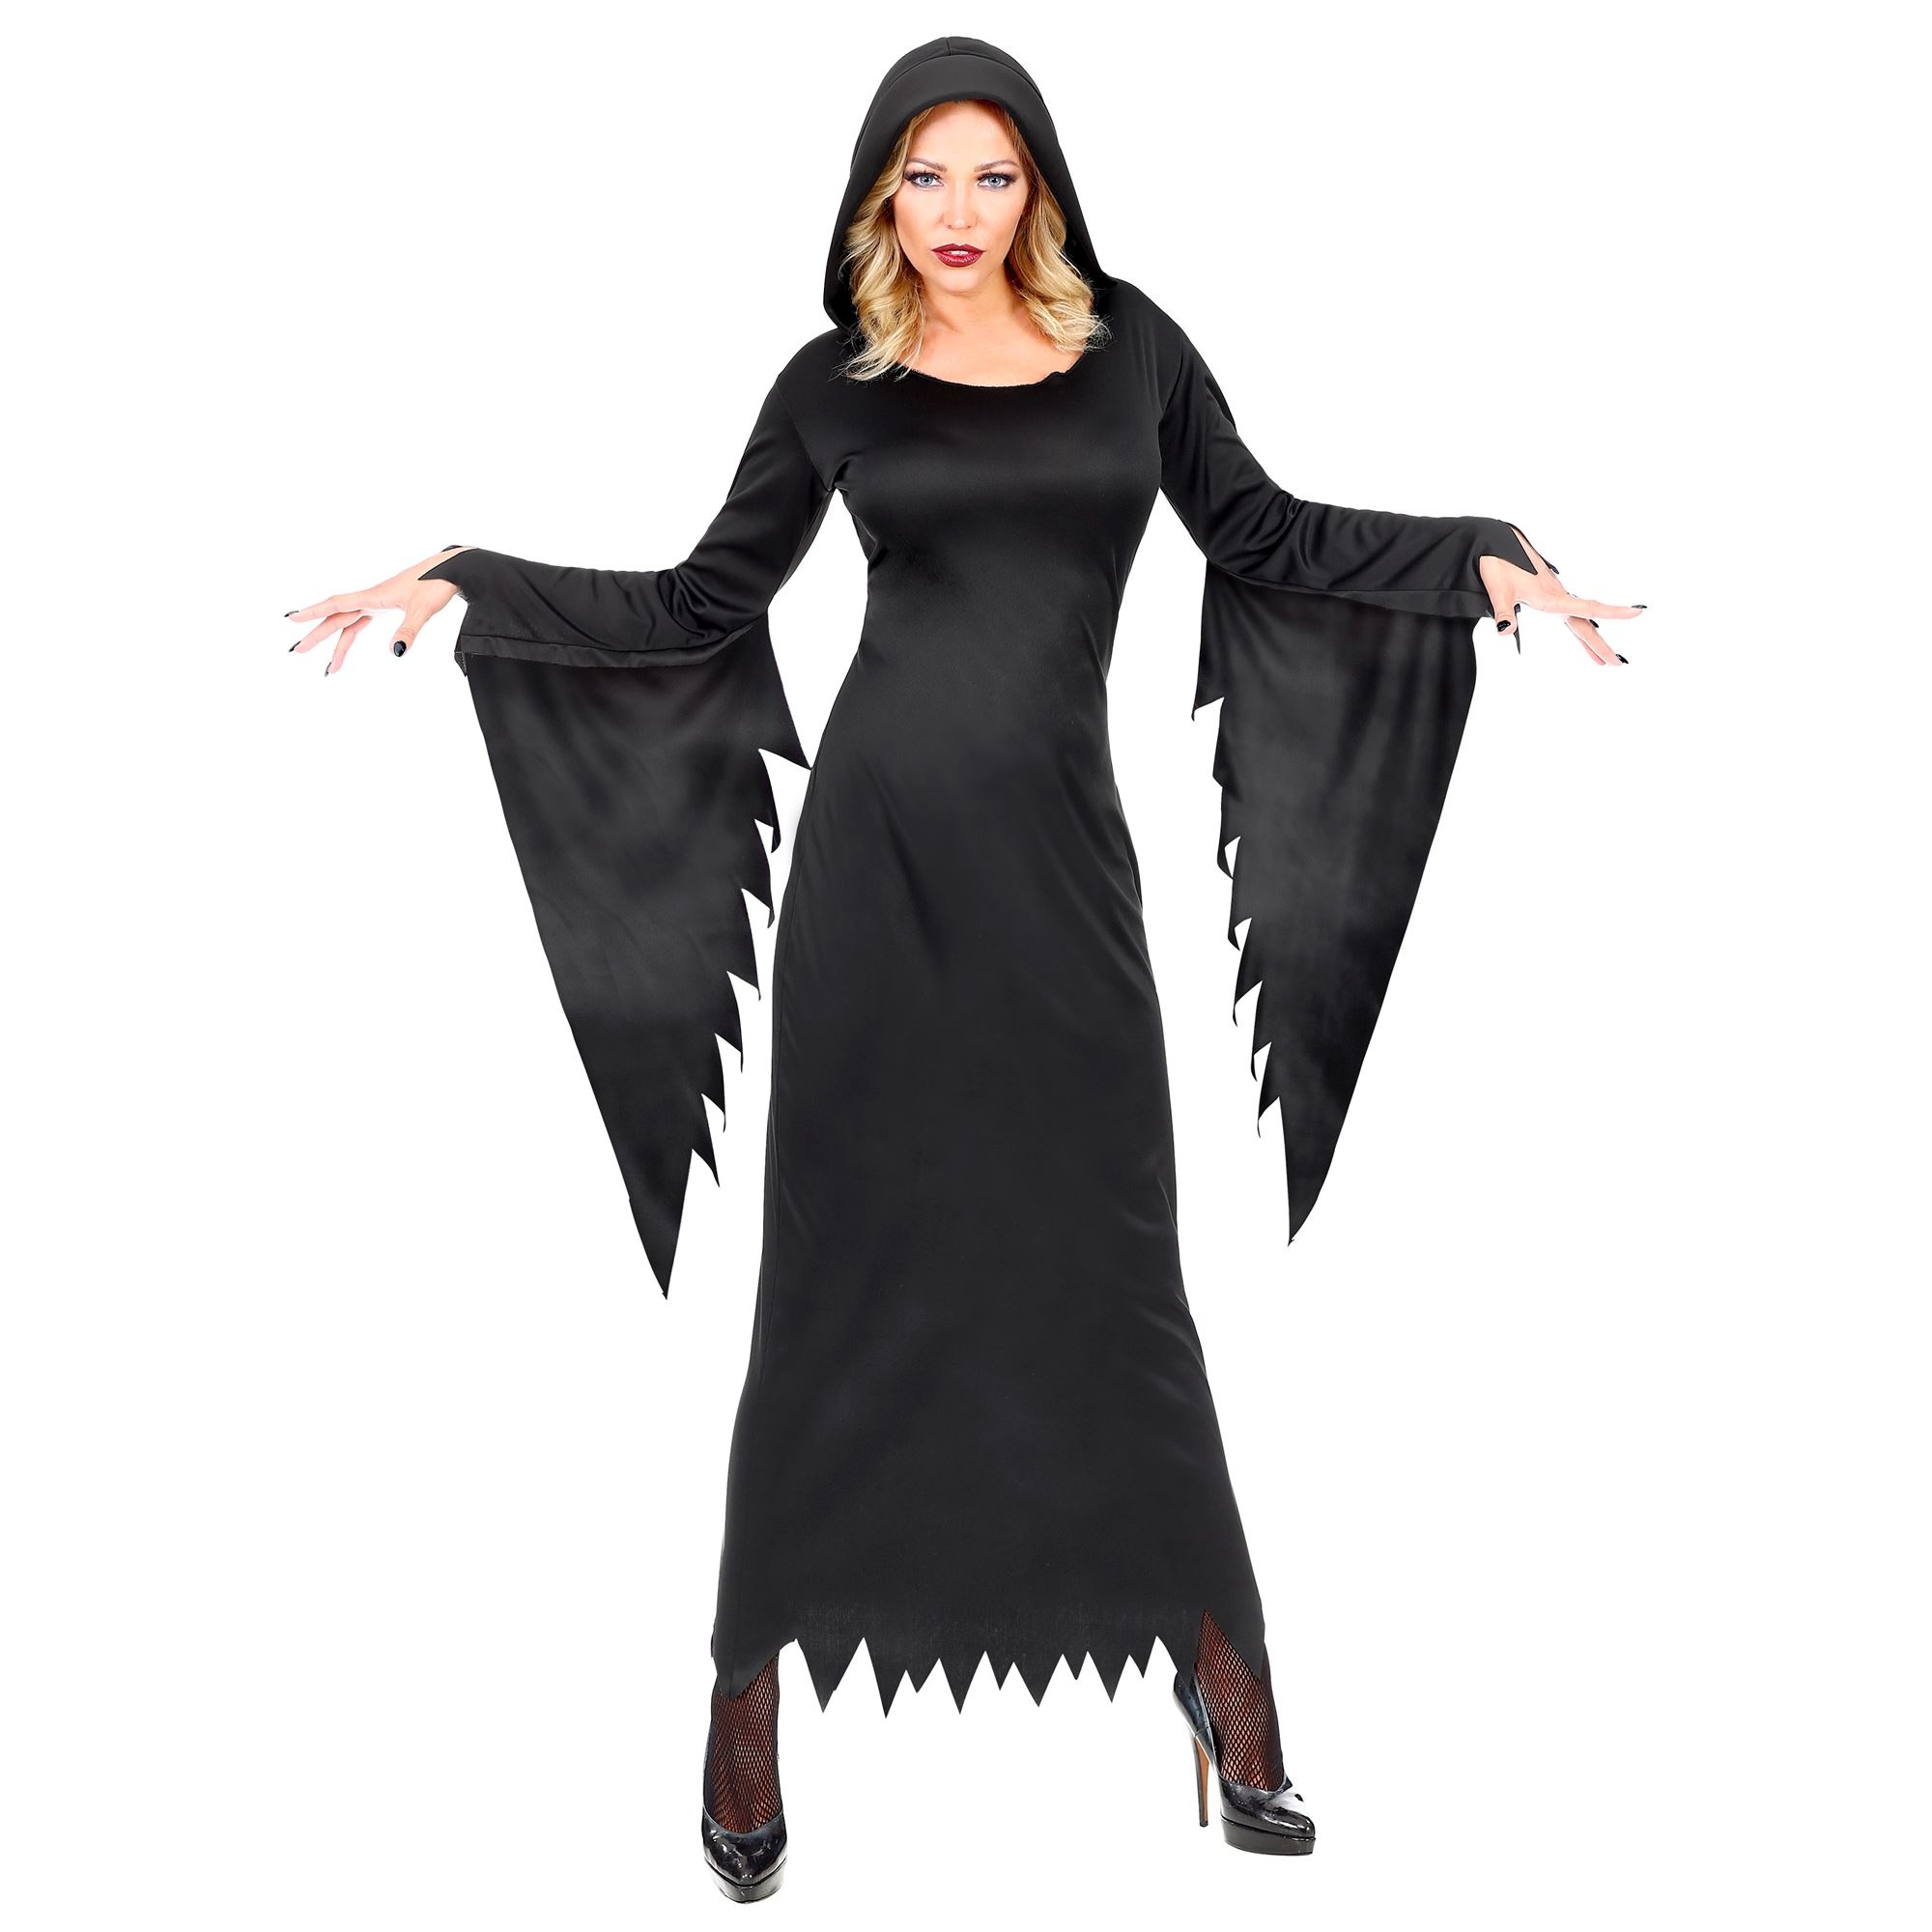 Widmann - Heks & Spider Lady & Voodoo & Duistere Religie Kostuum - Gotische Voodoo Koningin Duistere Zaken - Vrouw - zwart - XL - Halloween - Verkleedkleding